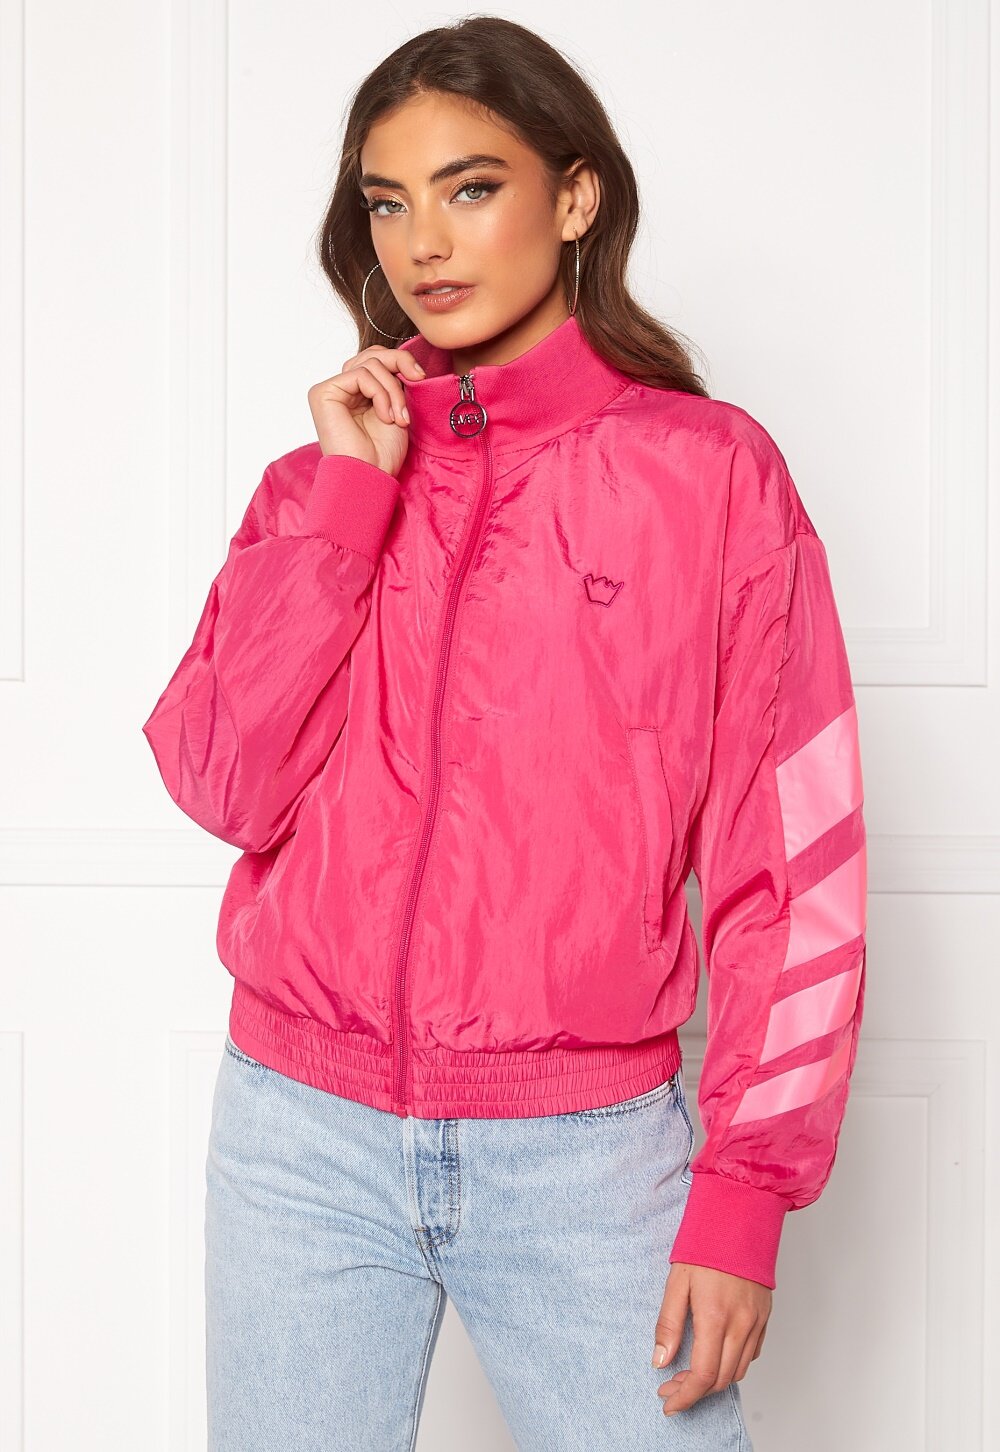 Svea W. Windbreaker Jacket 533 Bright Pink